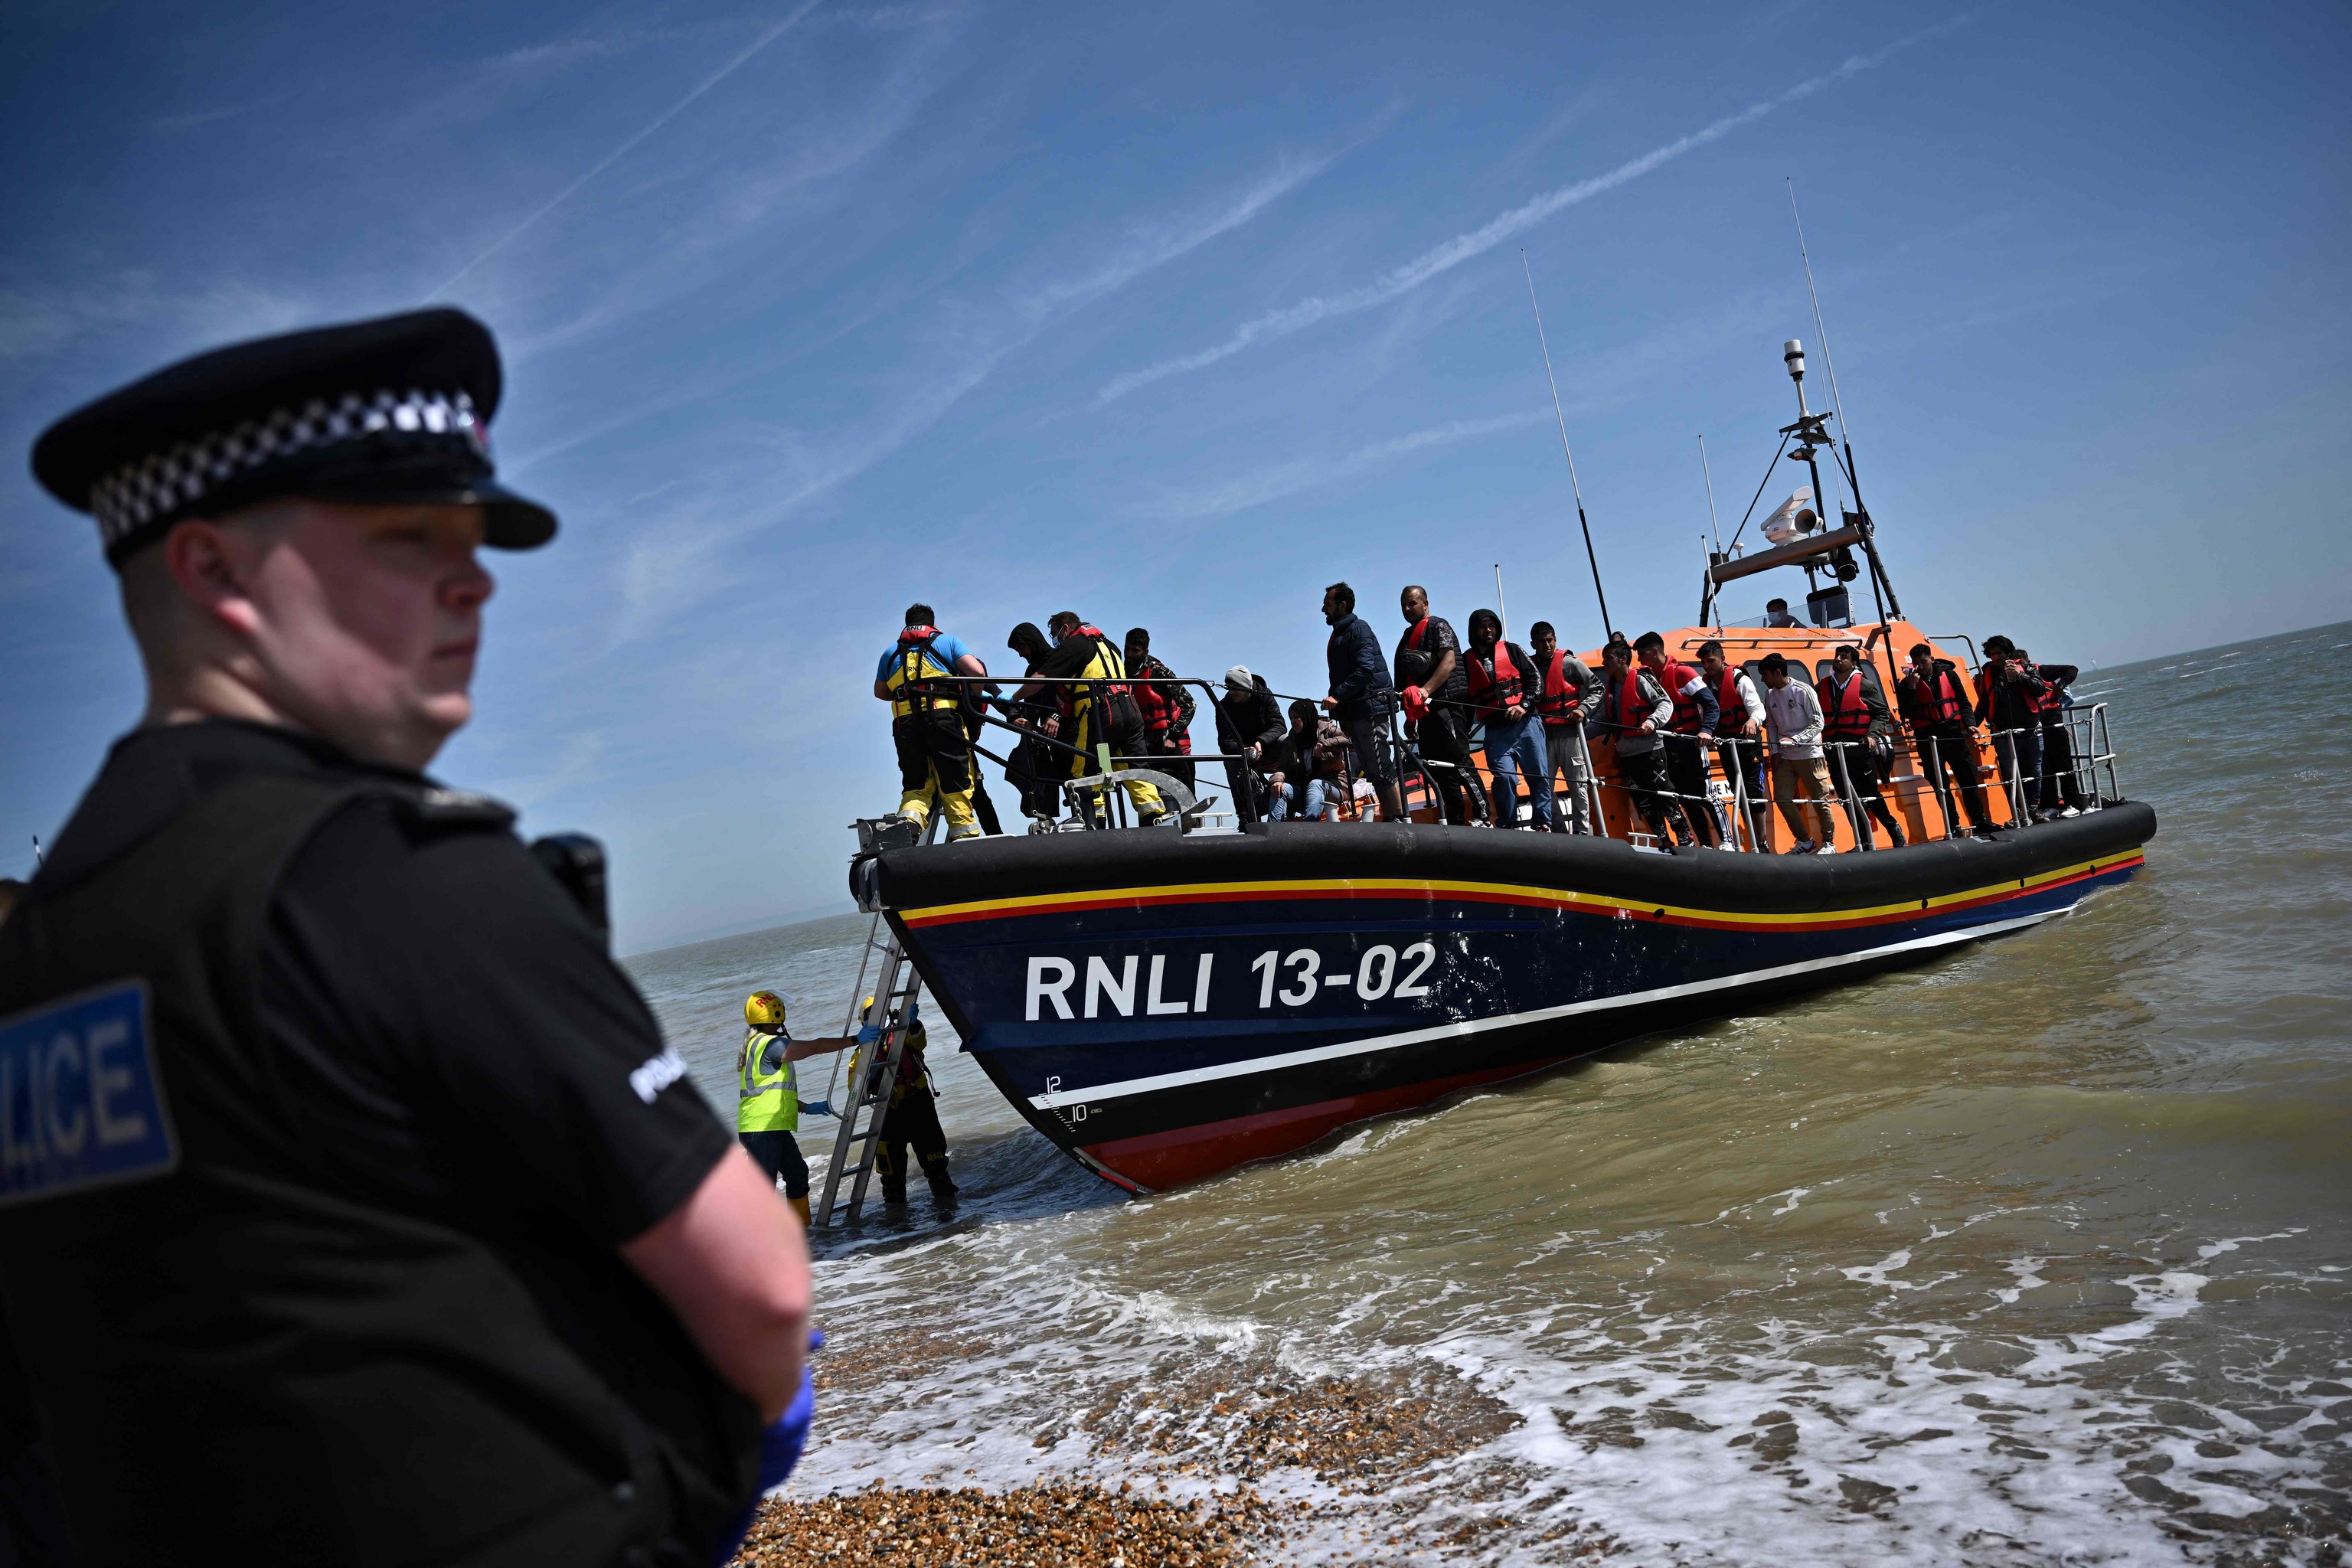 Casi 1.300 migrantes cruzan el Canal de la Mancha en un solo día, nueva cifra récord